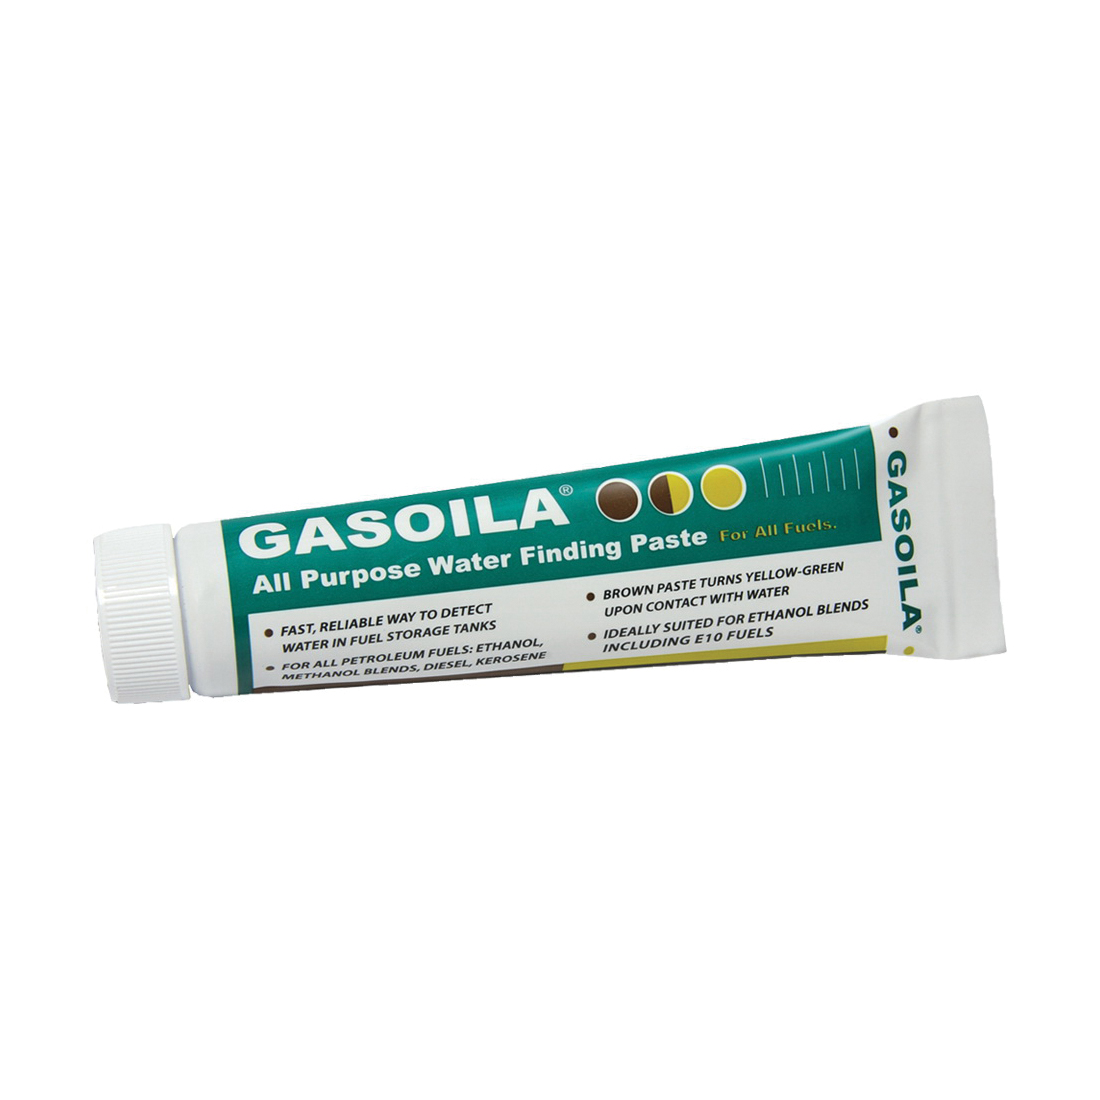 Gasoila® AP02 Water Finding Paste, 2 oz, Tube, Paste, Light Brown, Yellow-Green Indicating